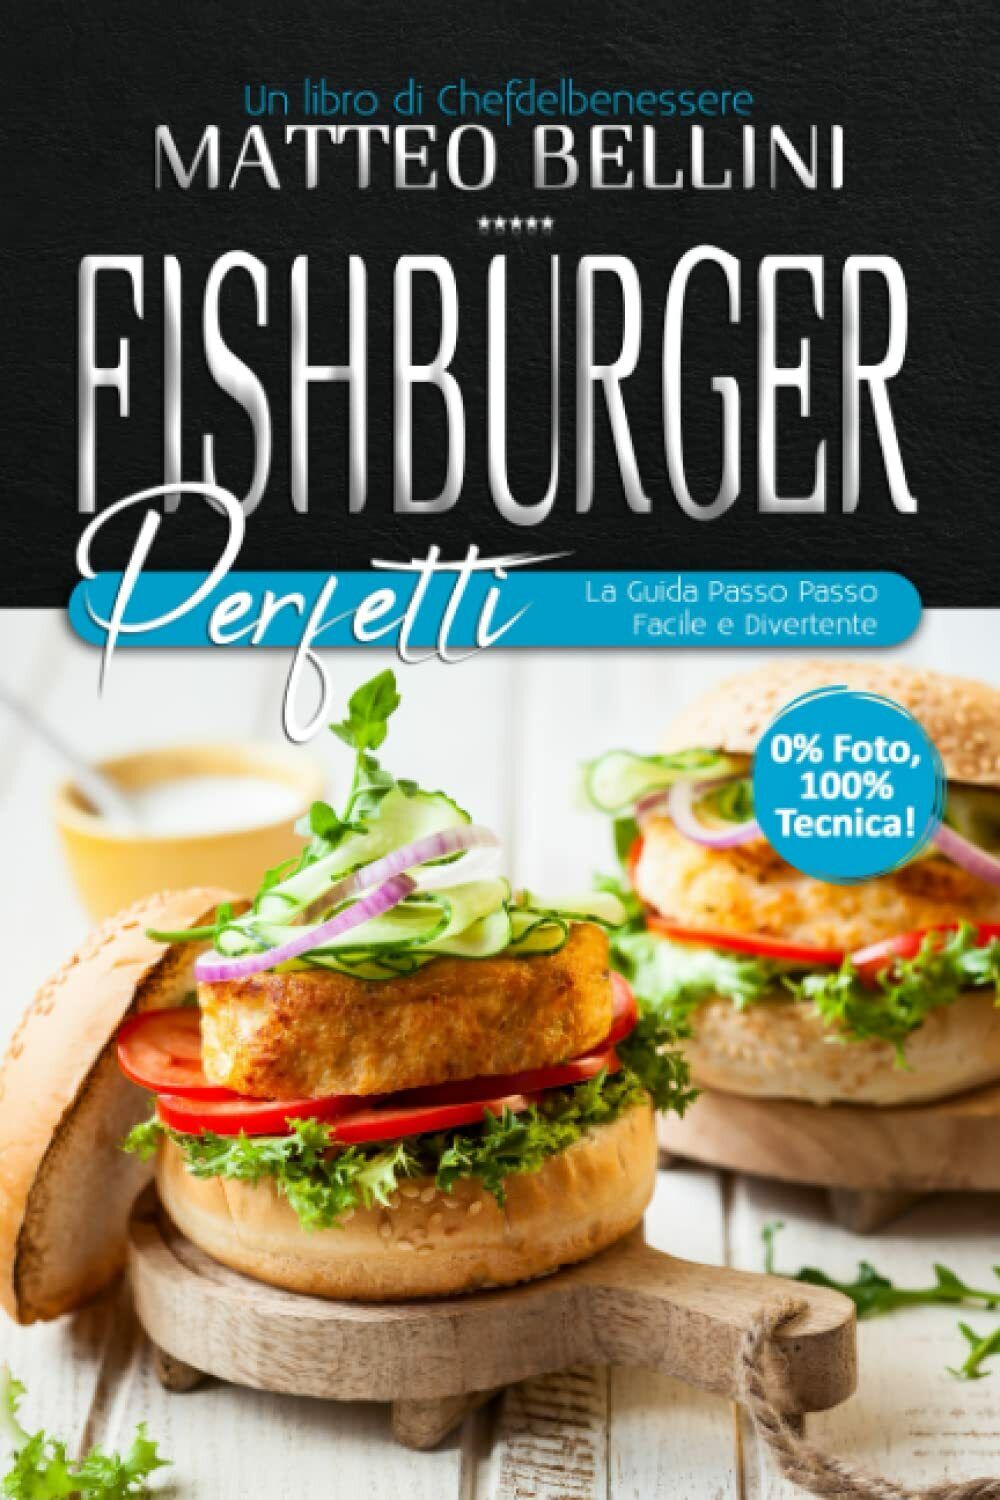 Fishburger perfetti: La guida passo passo facile e divertente di Matteo Bellini, libro usato